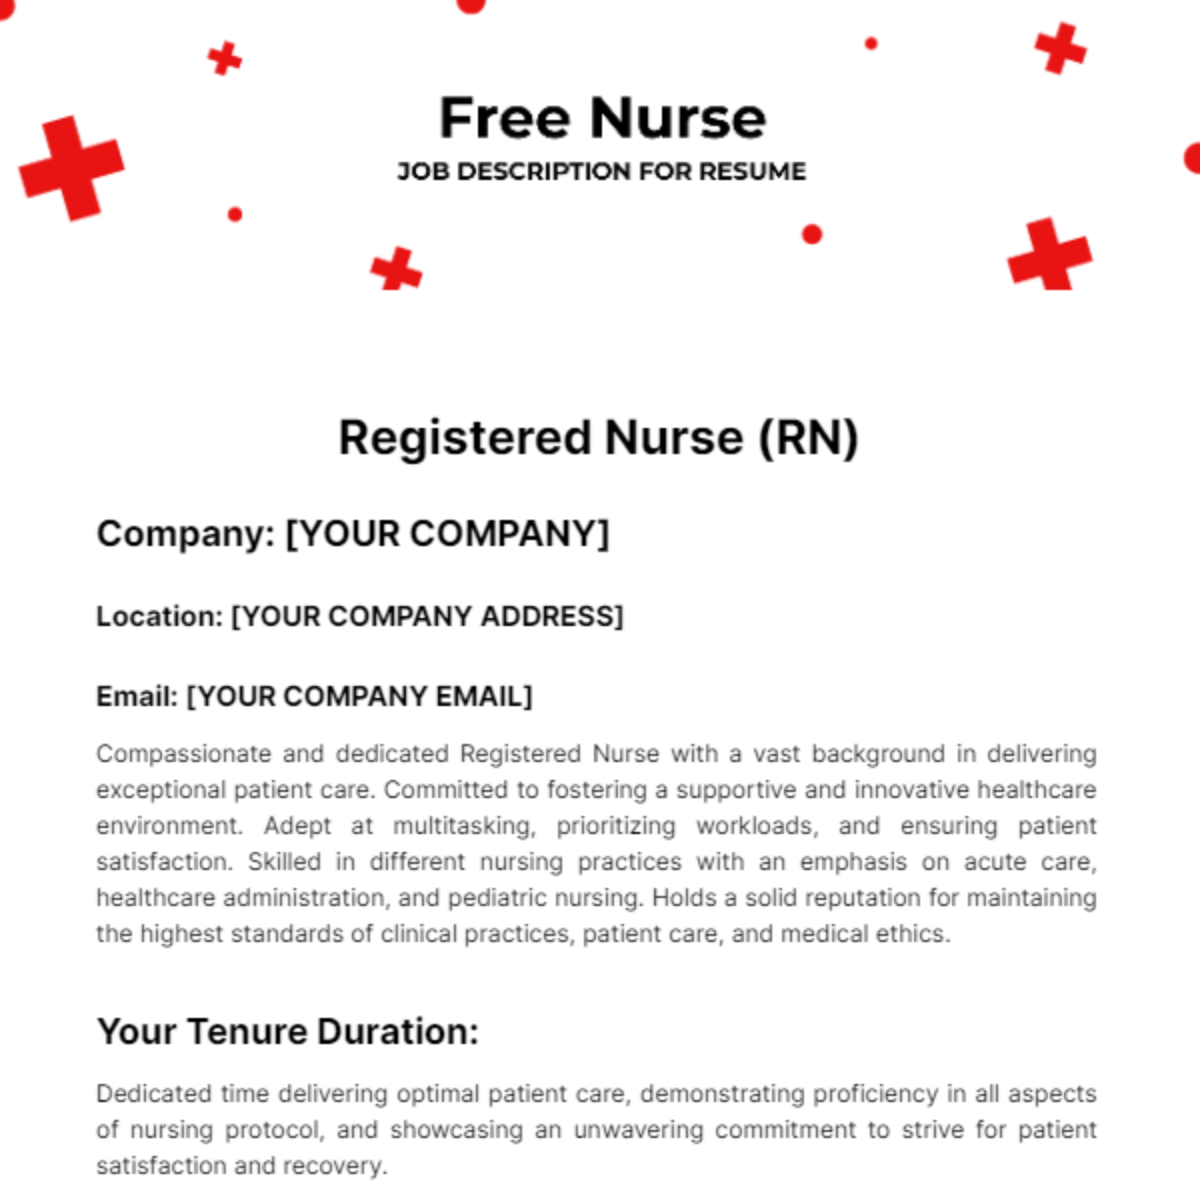 Nurse Job Description for Resume Template